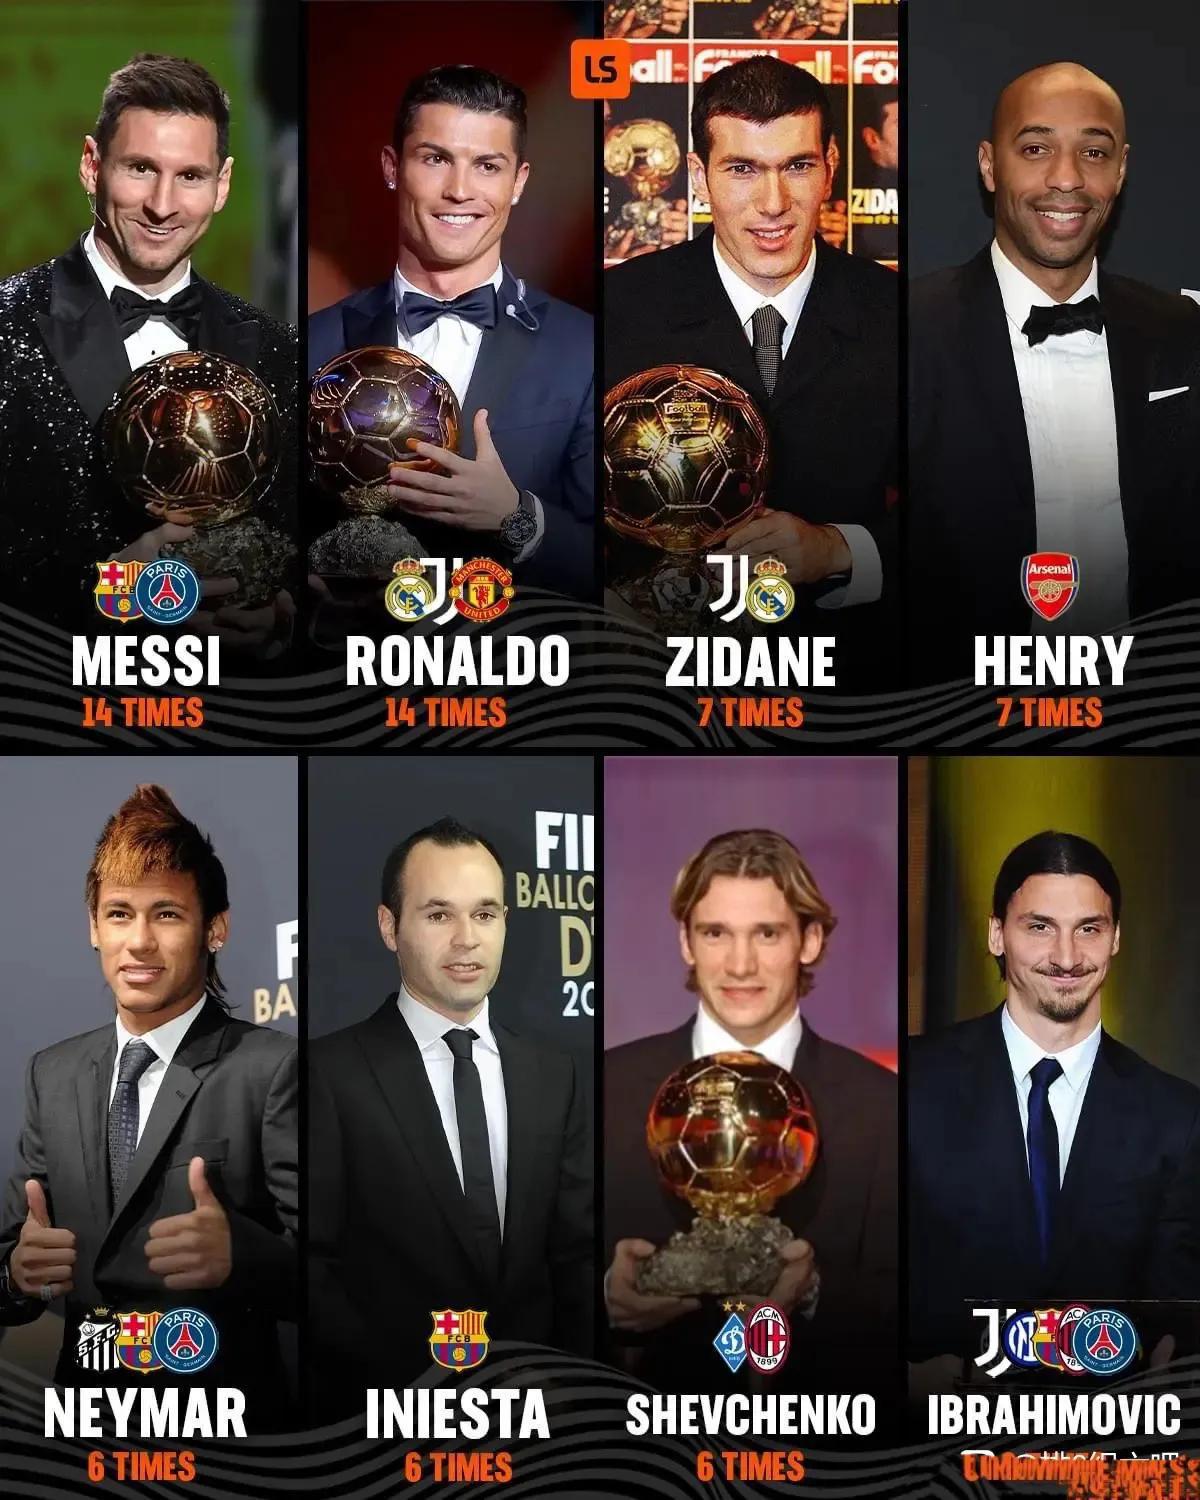 金球奖综合实力最强的球星，入选前十次数排名。

梅西总共14次入选前十，几乎年年